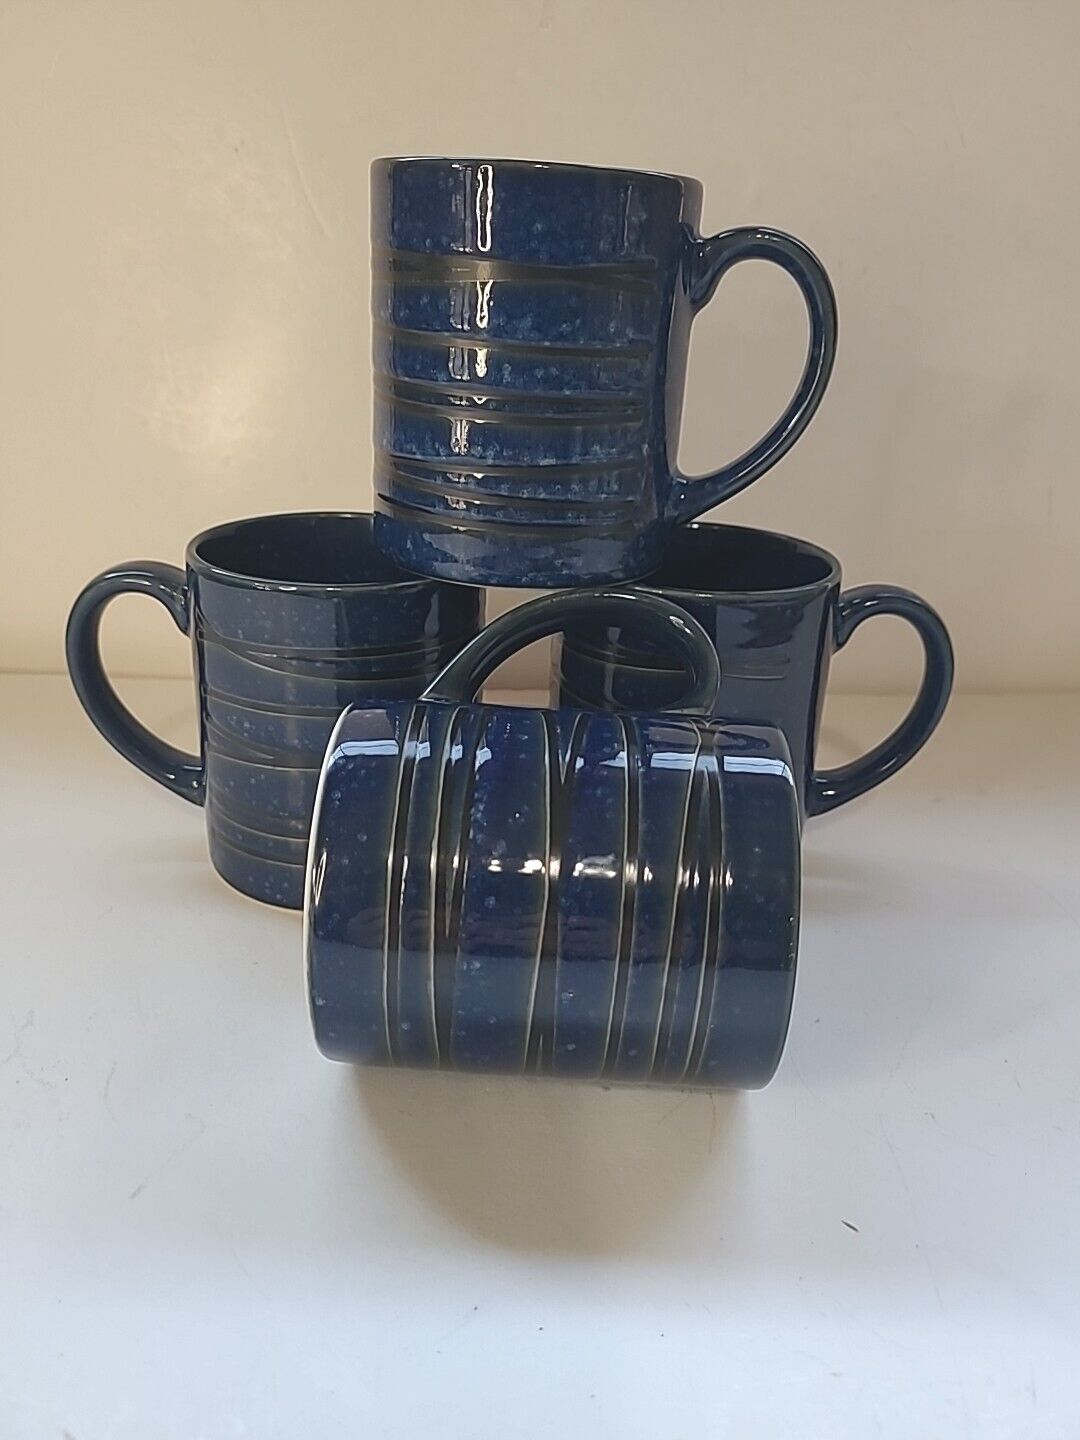 4 Vintage Speckled Cobalt Blue Stoneware Mug Cup Black Line Design Japan MCM